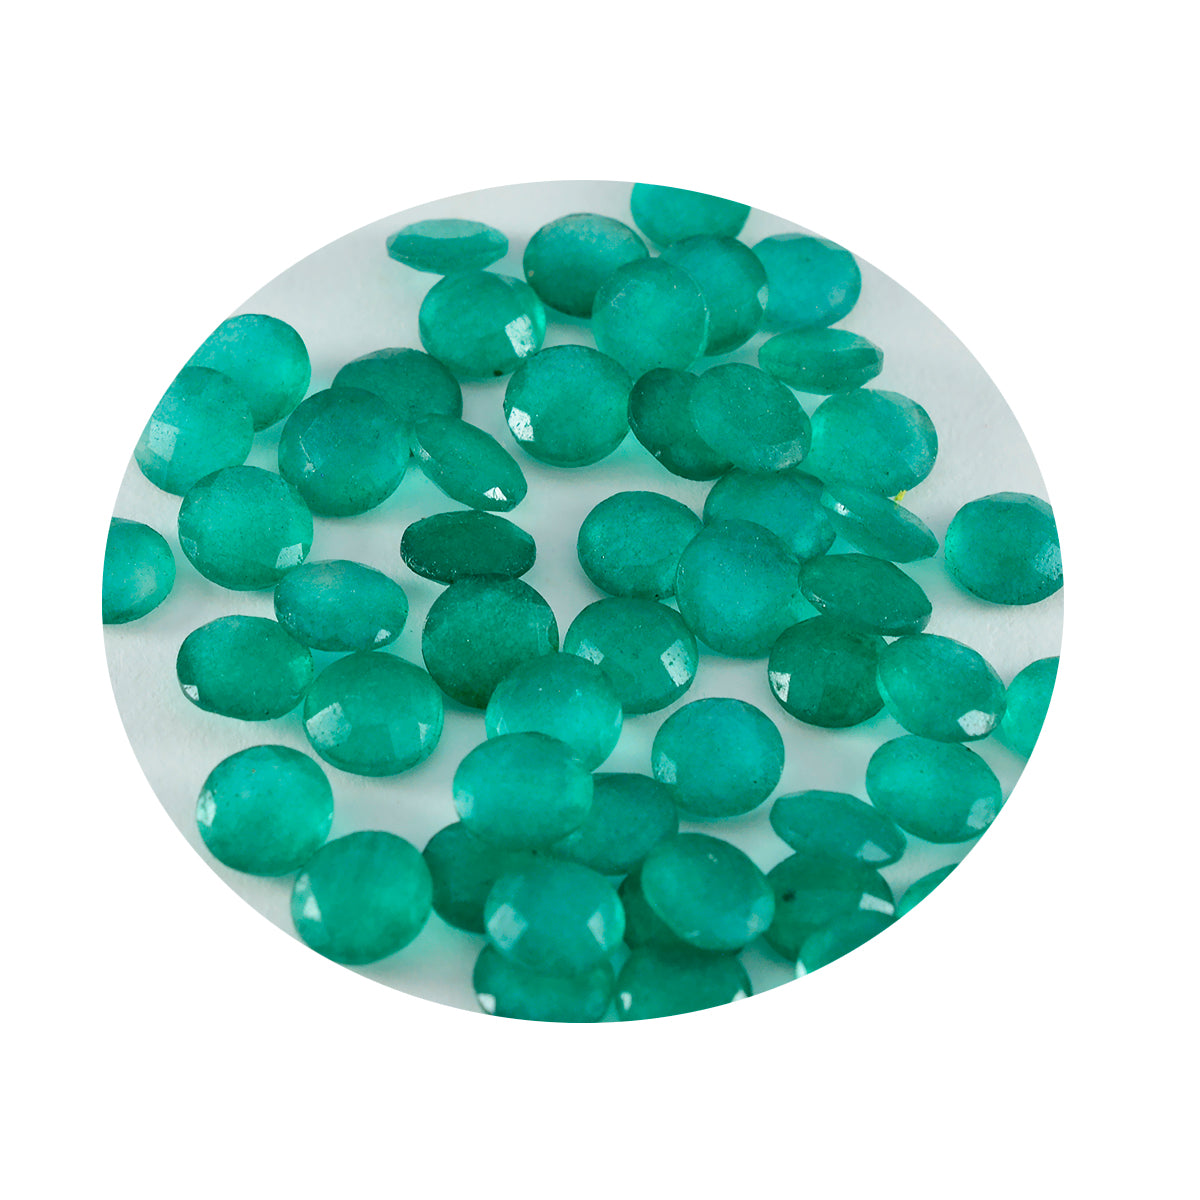 riyogems 1pc 本物のグリーン ジャスパー ファセット 3x3 mm ラウンド形状の素晴らしい品質の宝石